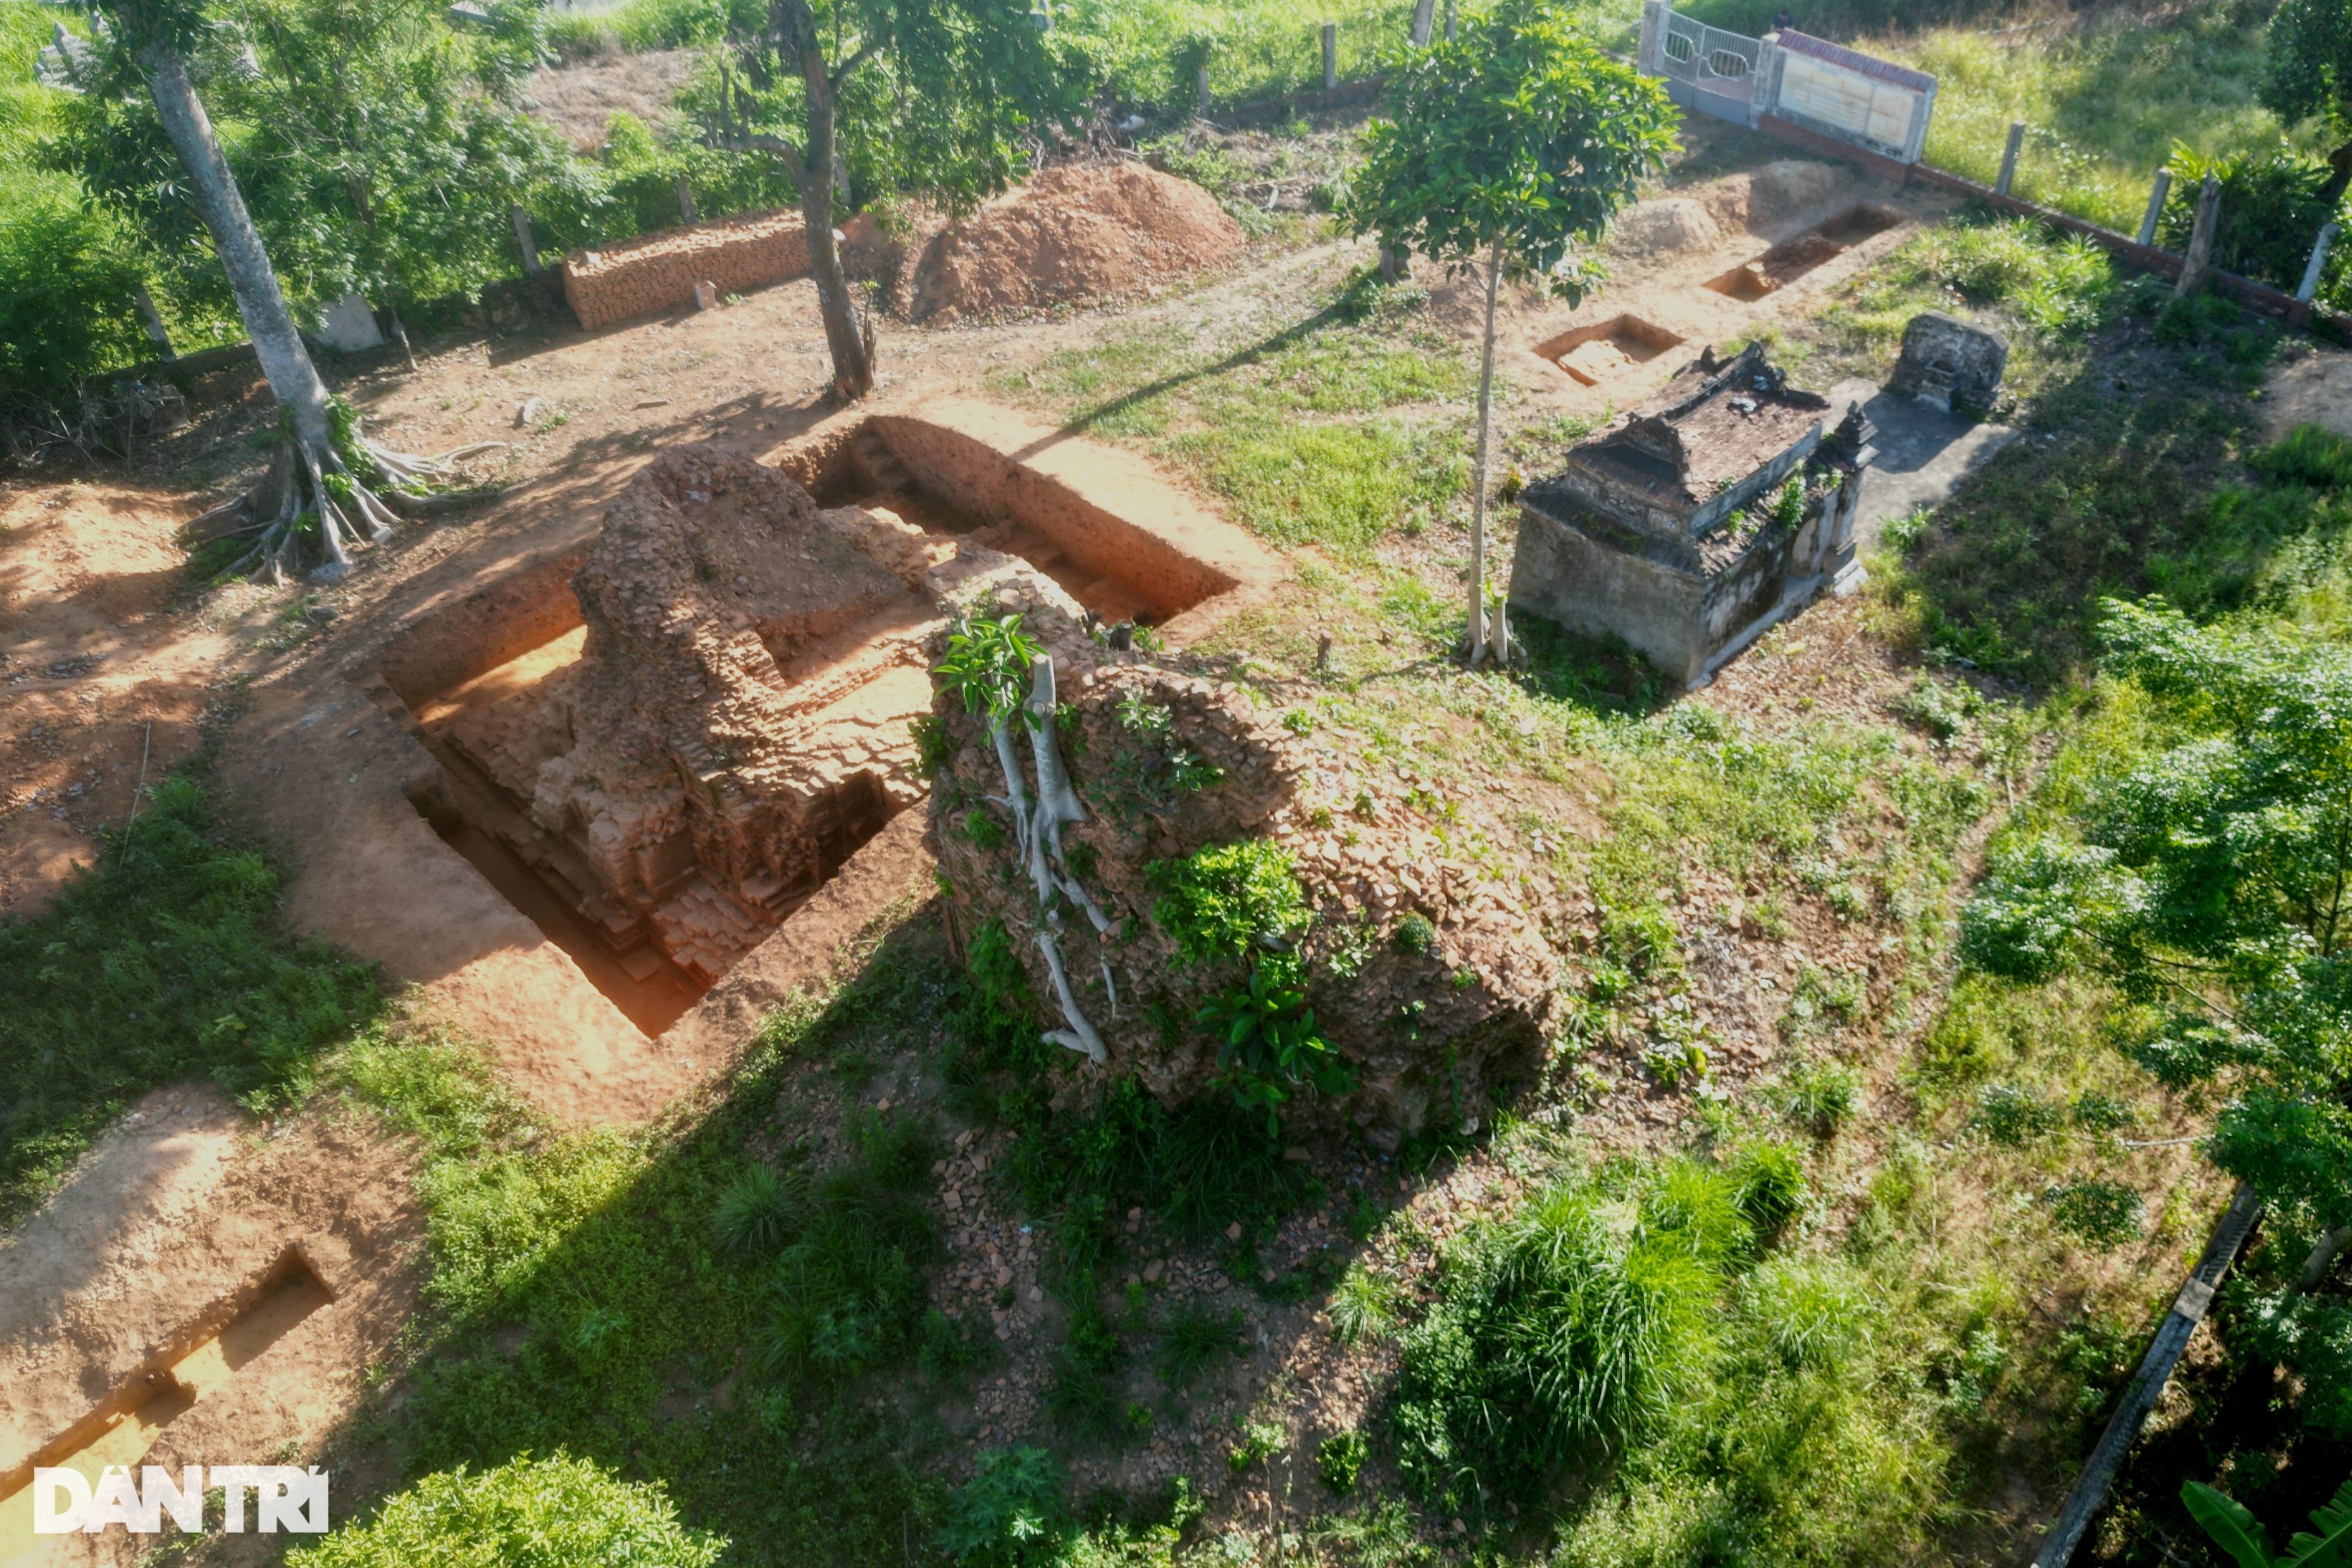 View - Tháp Chăm đôi Liễu Cốc vừa được khảo cổ ở Huế | Báo Dân trí